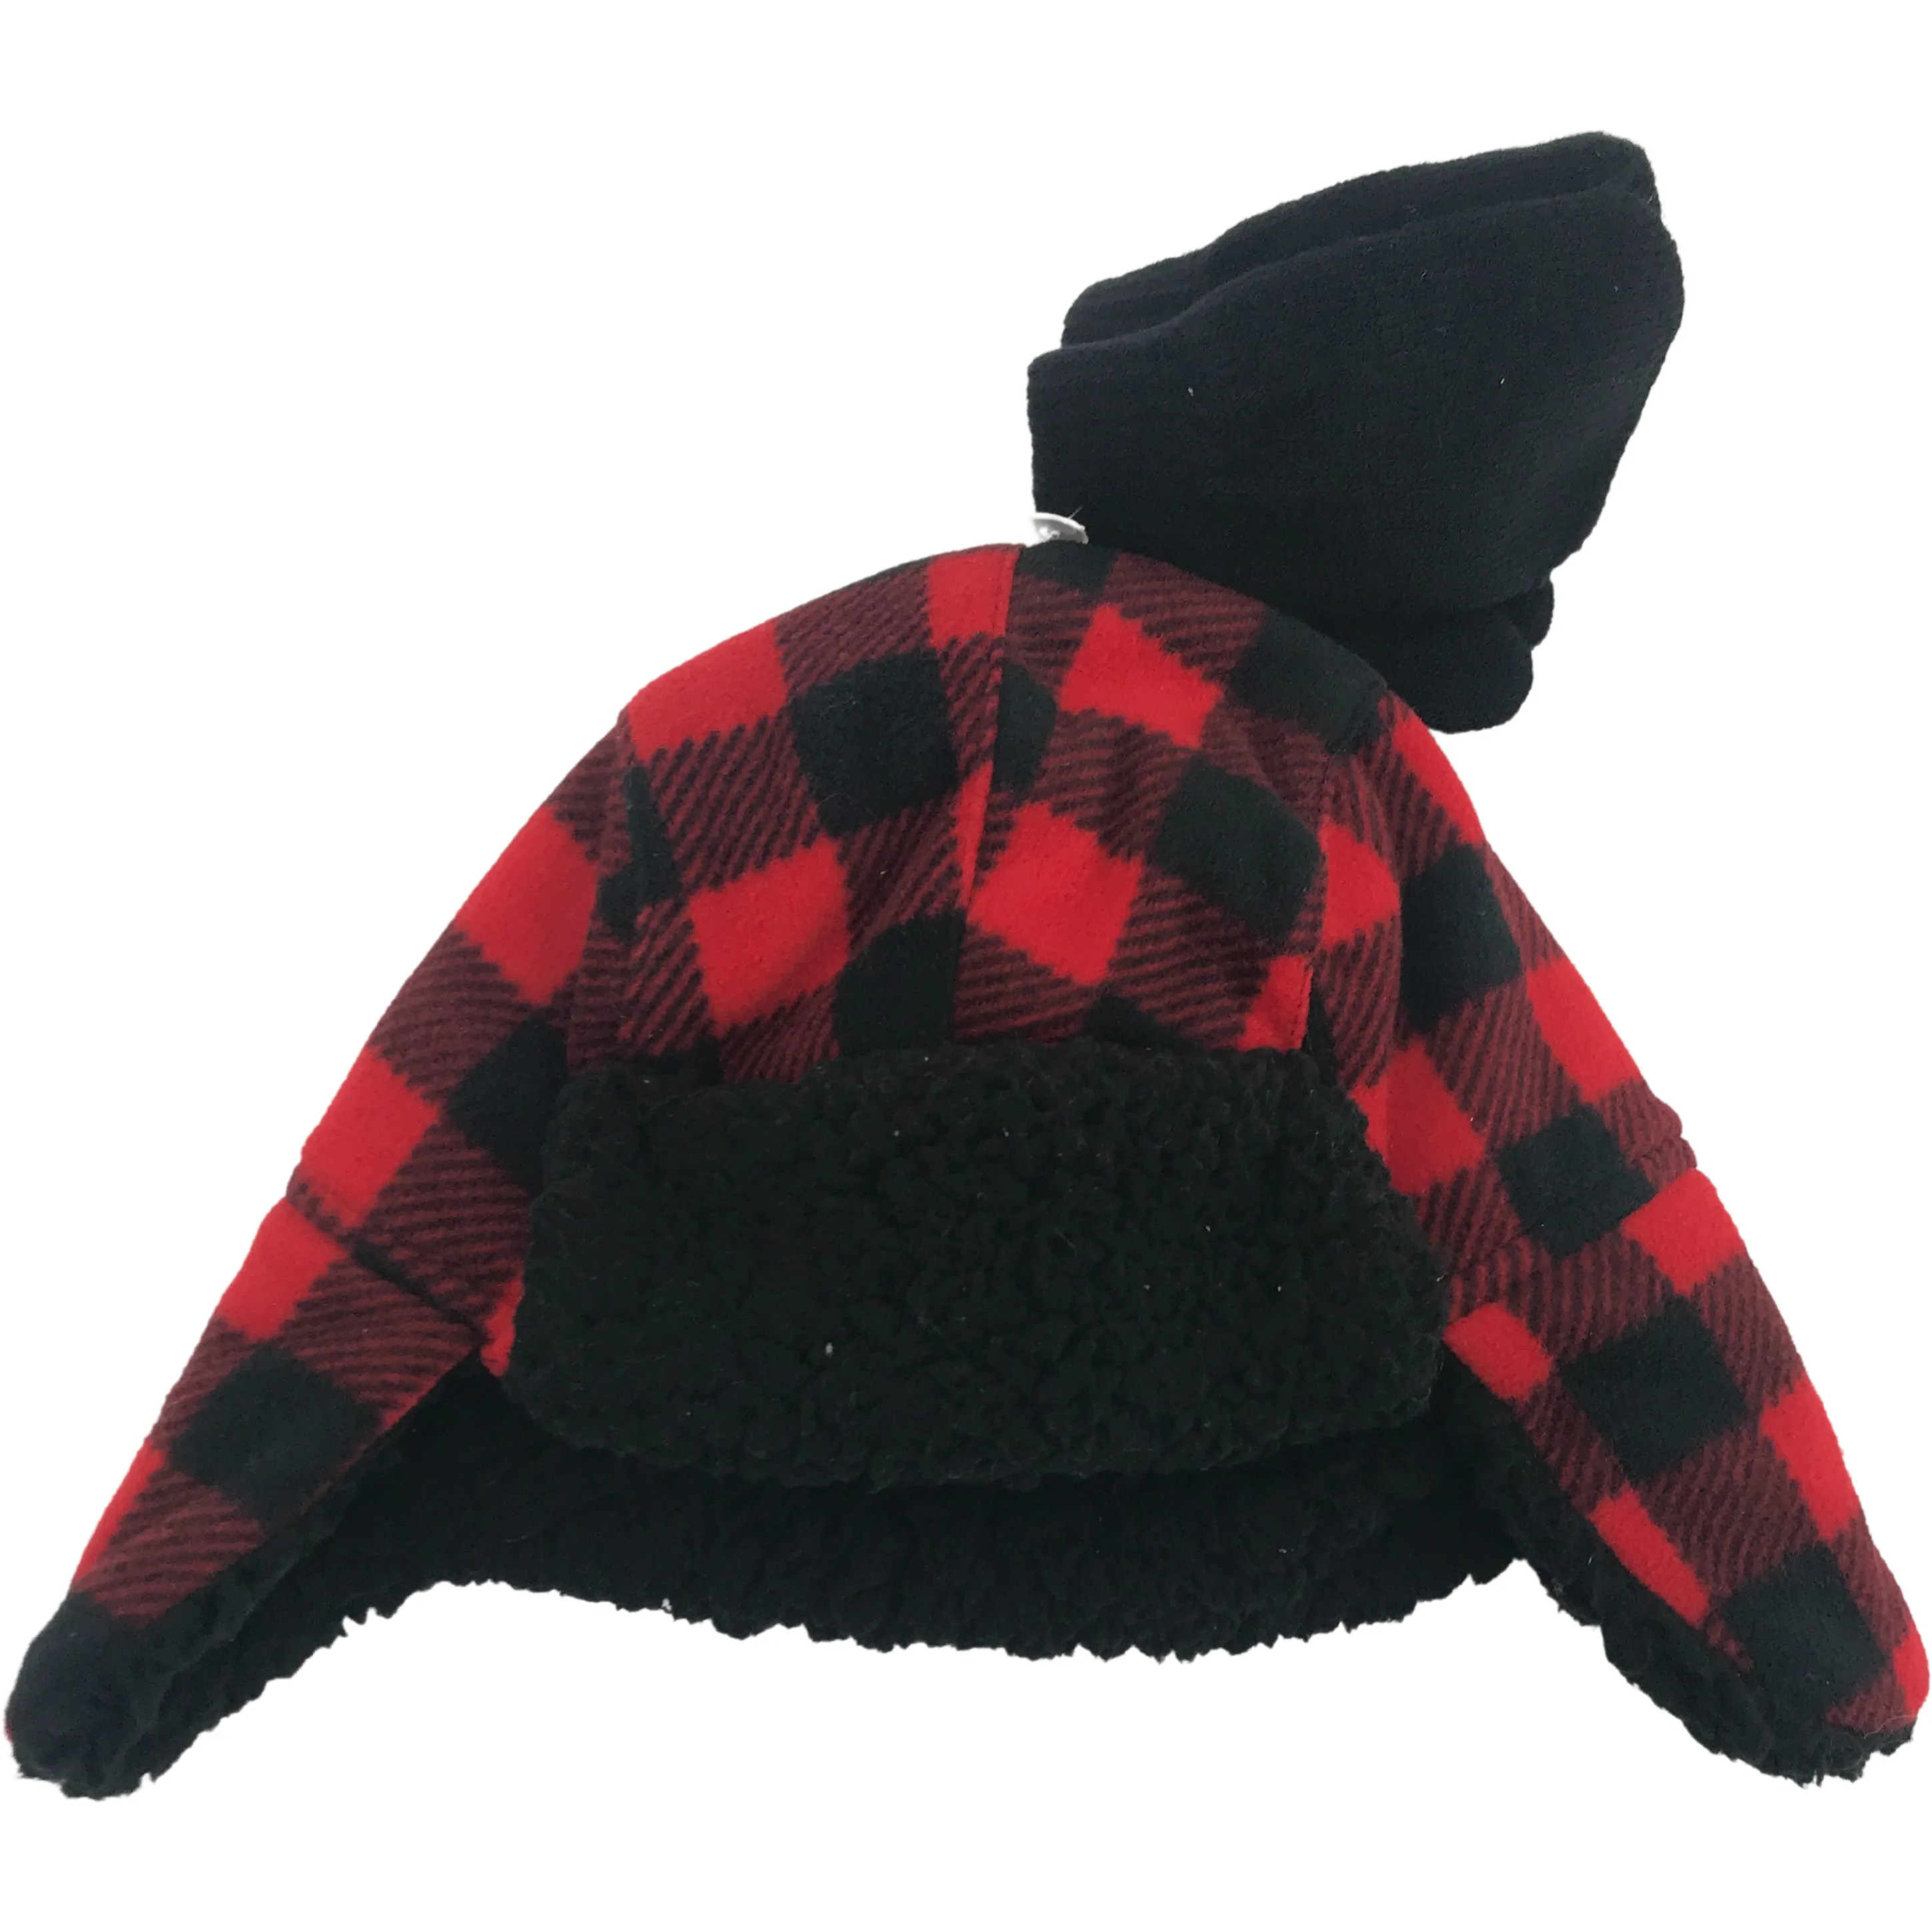 Children's Winter Hat & Glove Set / Red Plaid / Lightweight Mittens / Various Sizes